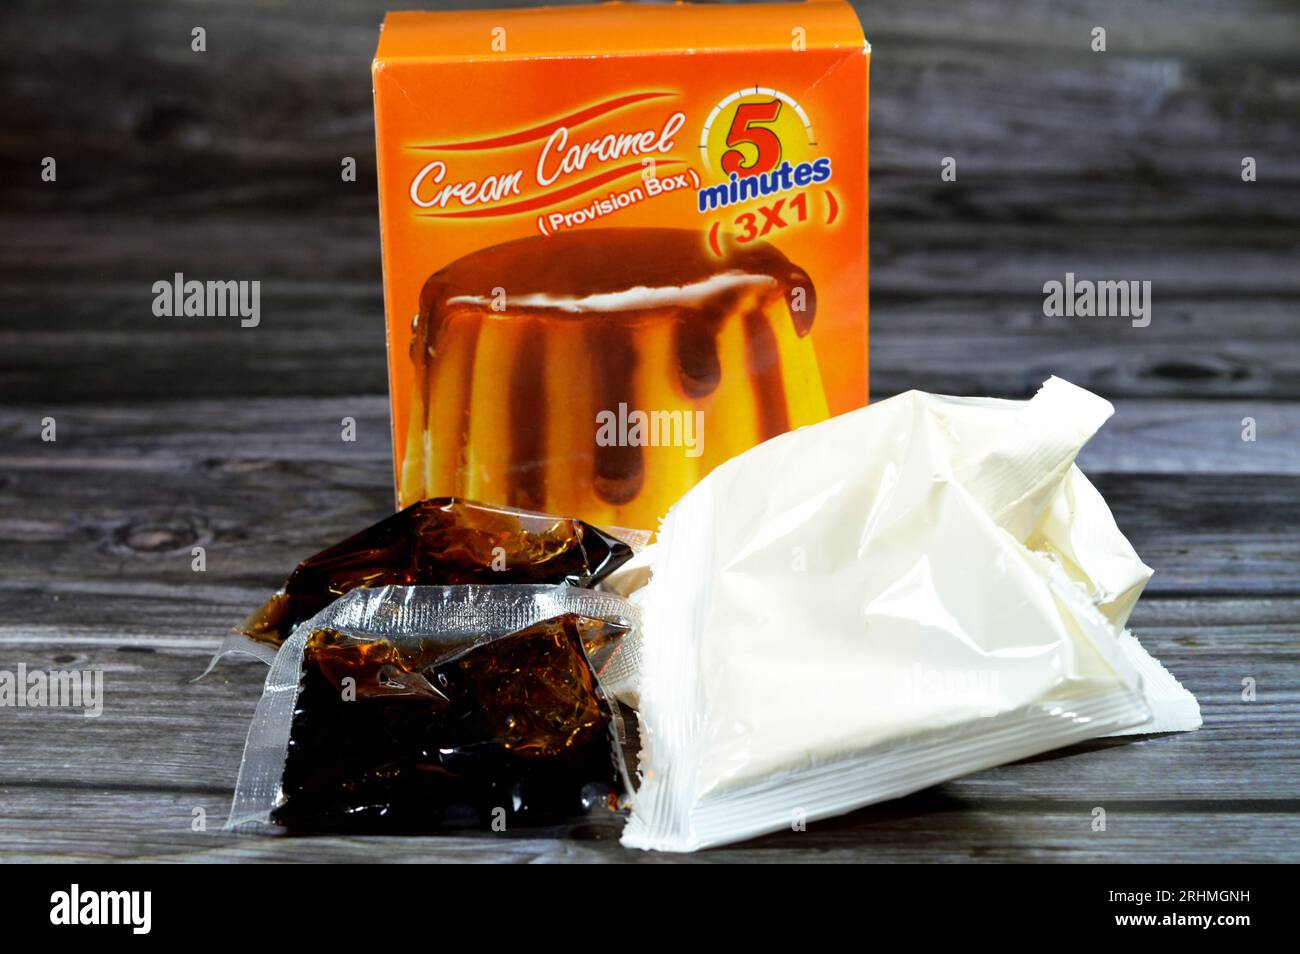 Le Caire, Egypte, juillet 29 2023 : 5 minutes crème caramel, flan, caramel pudding ou crème anglaise est un dessert à la crème anglaise avec une couche de sauce caramel clair, un vari Banque D'Images